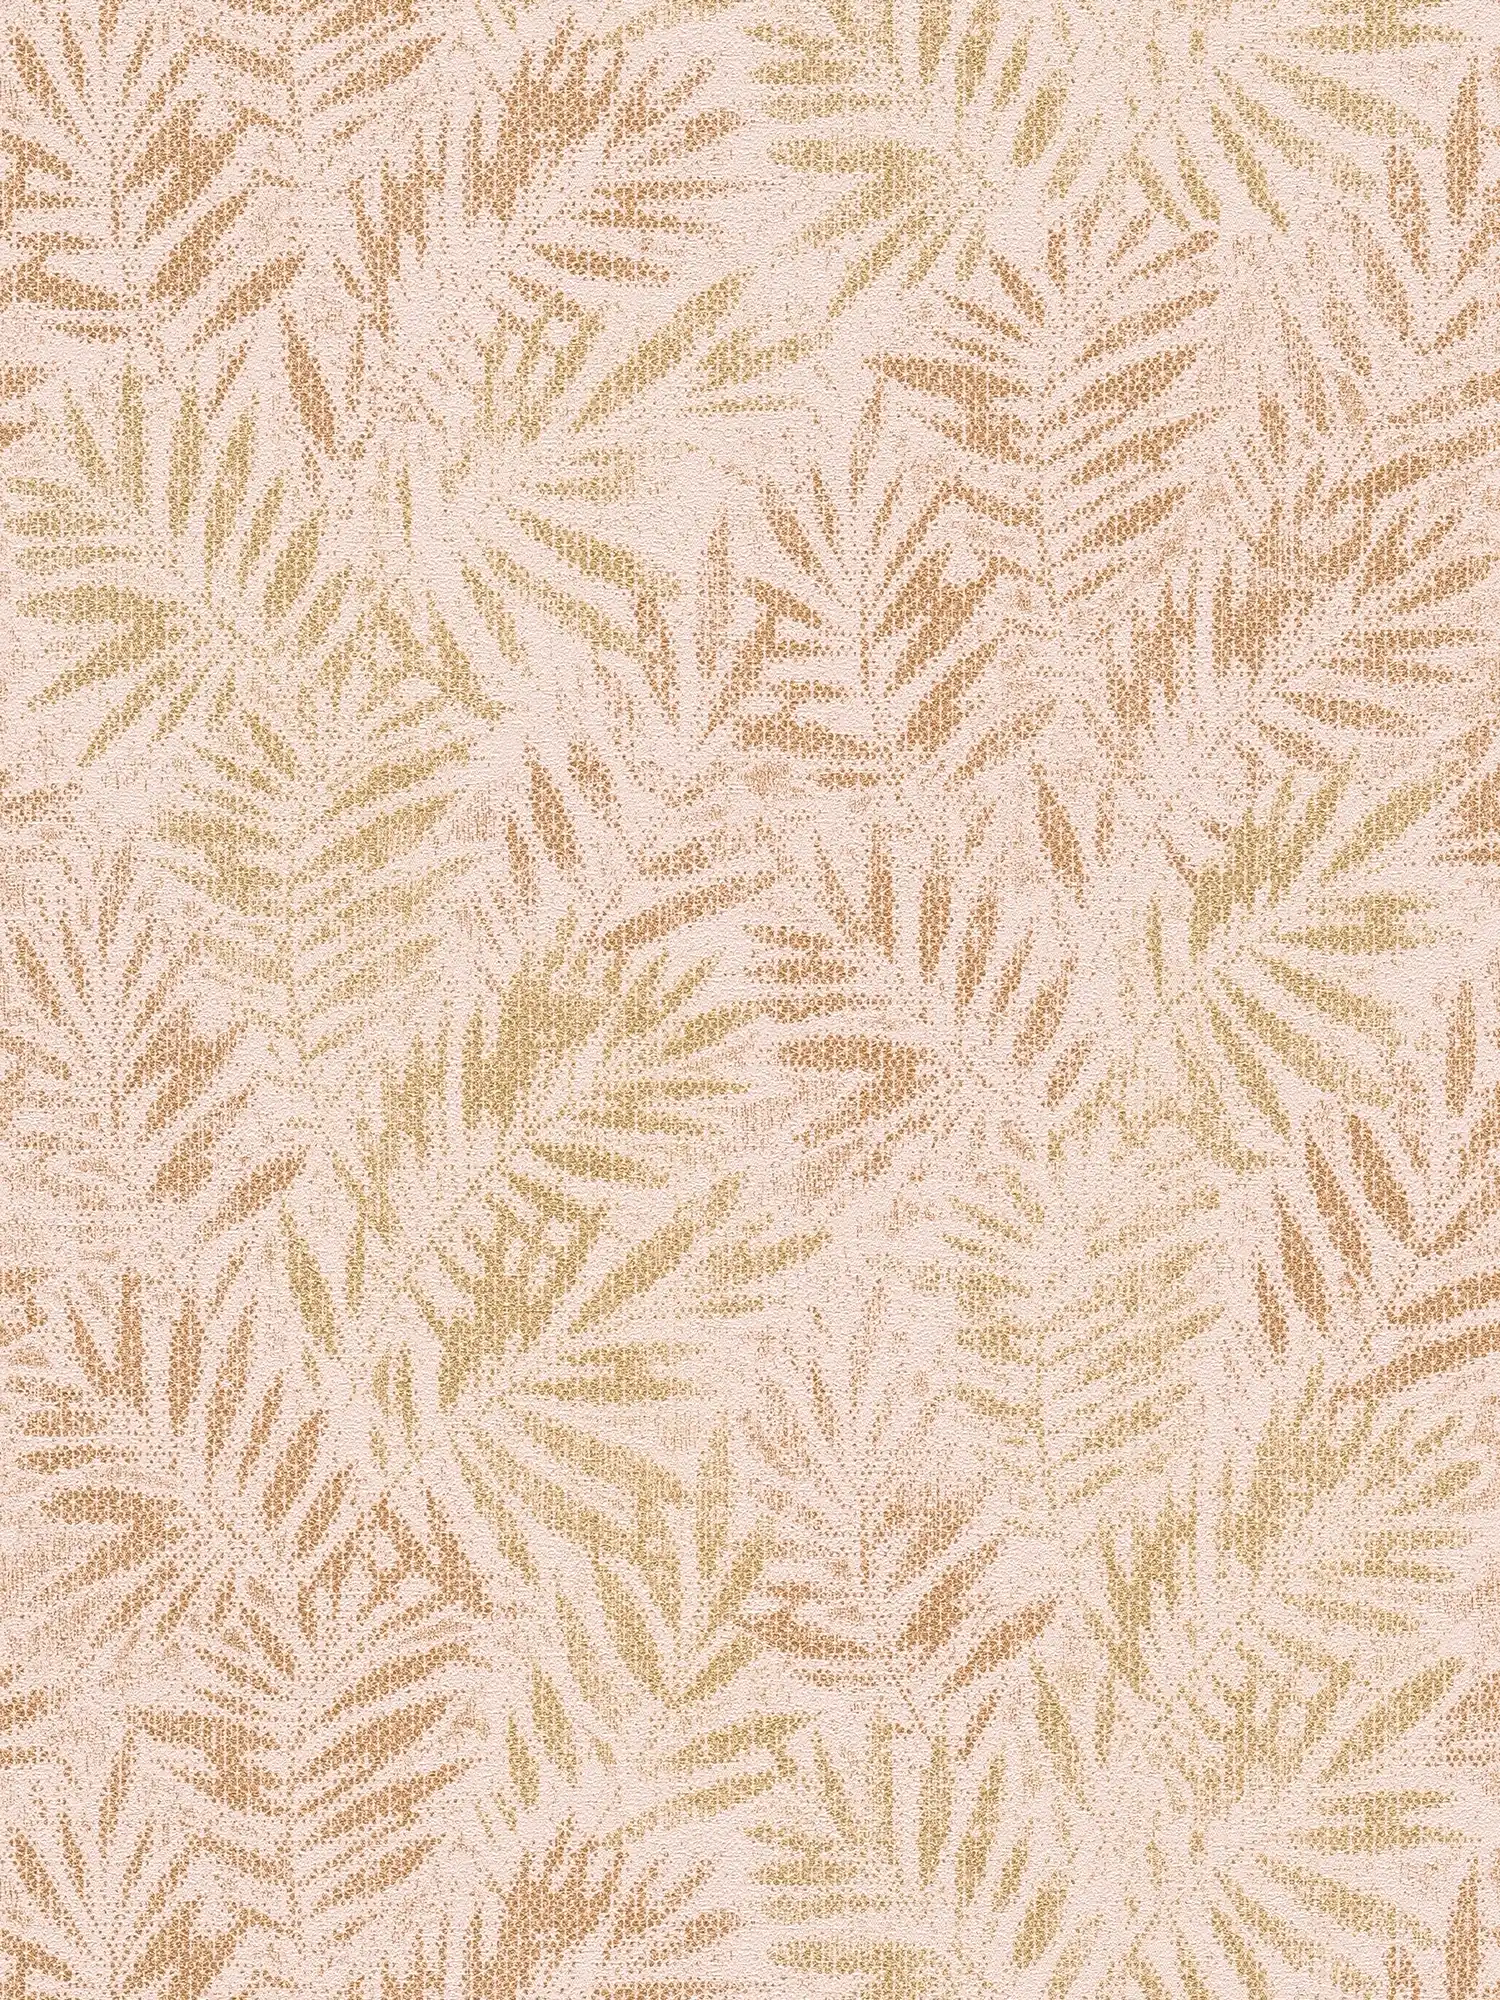 Papel pintado tejido-no tejido con motivo de hojas y efecto brillo - rosa, dorado
